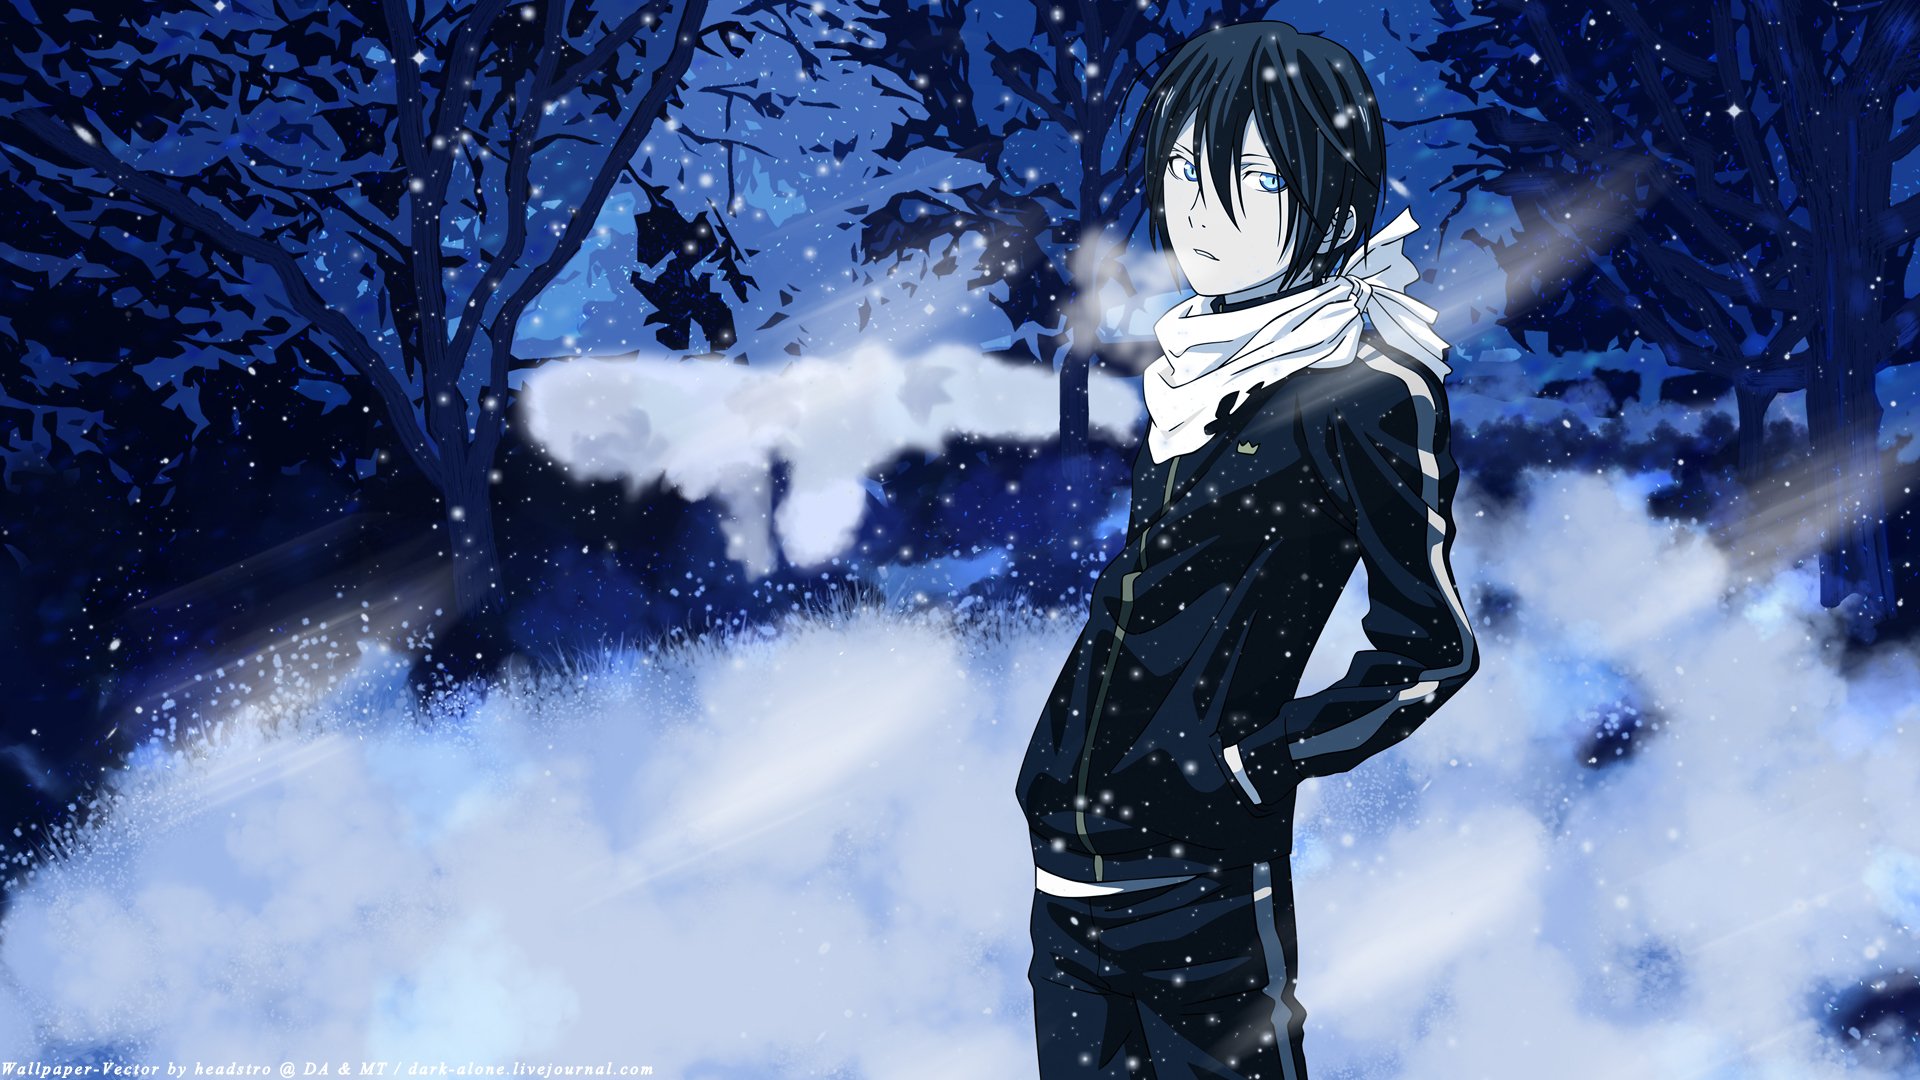 noragami tapete,schnee,anime,winter,himmel,schwarzes haar